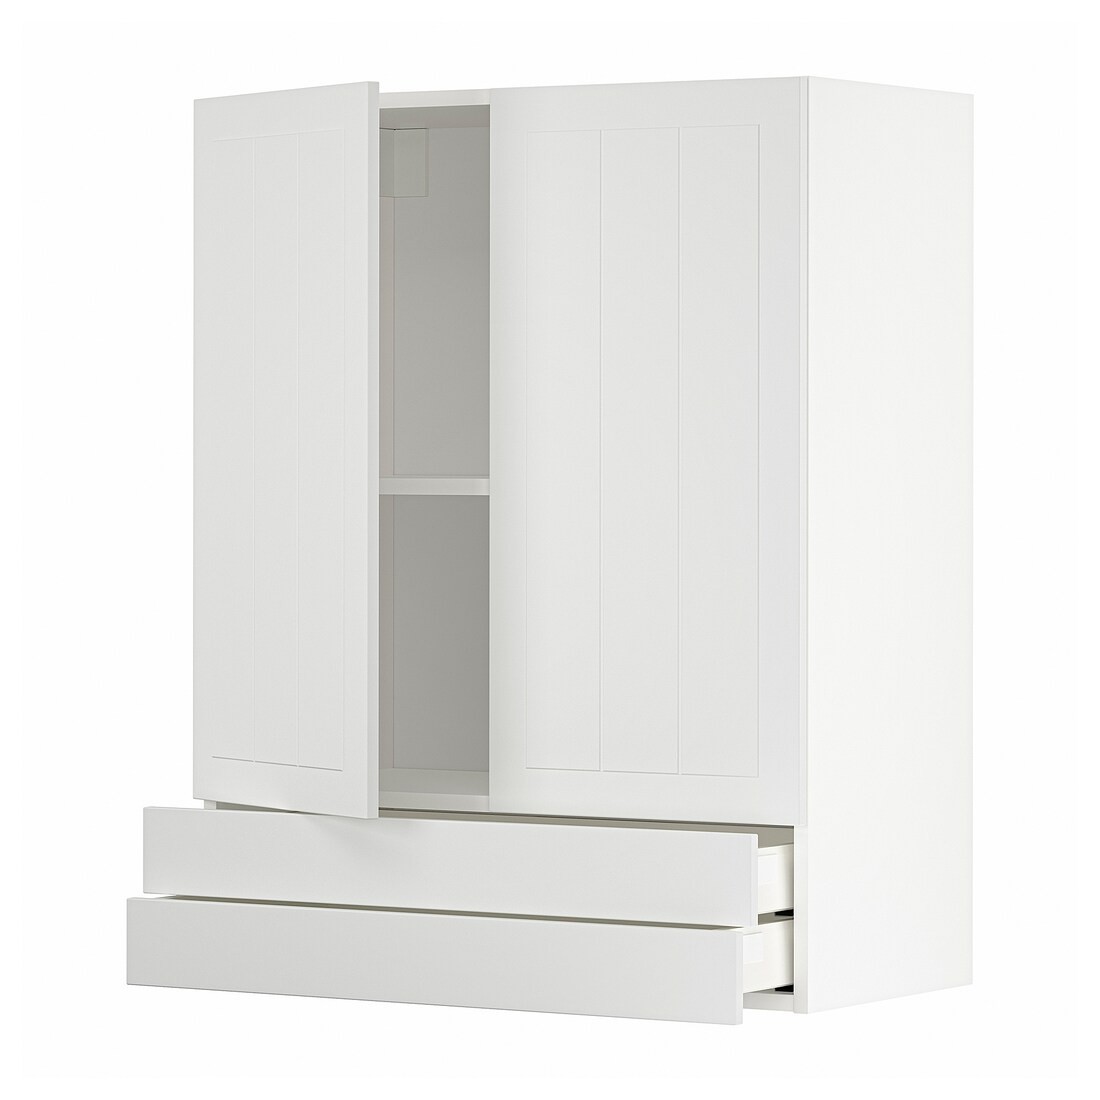 IKEA METOD МЕТОД / MAXIMERA МАКСІМЕРА Навісна шафа / 2 дверцят / 2 шухляди, білий / Stensund білий, 80x100 см 19456797 194.567.97